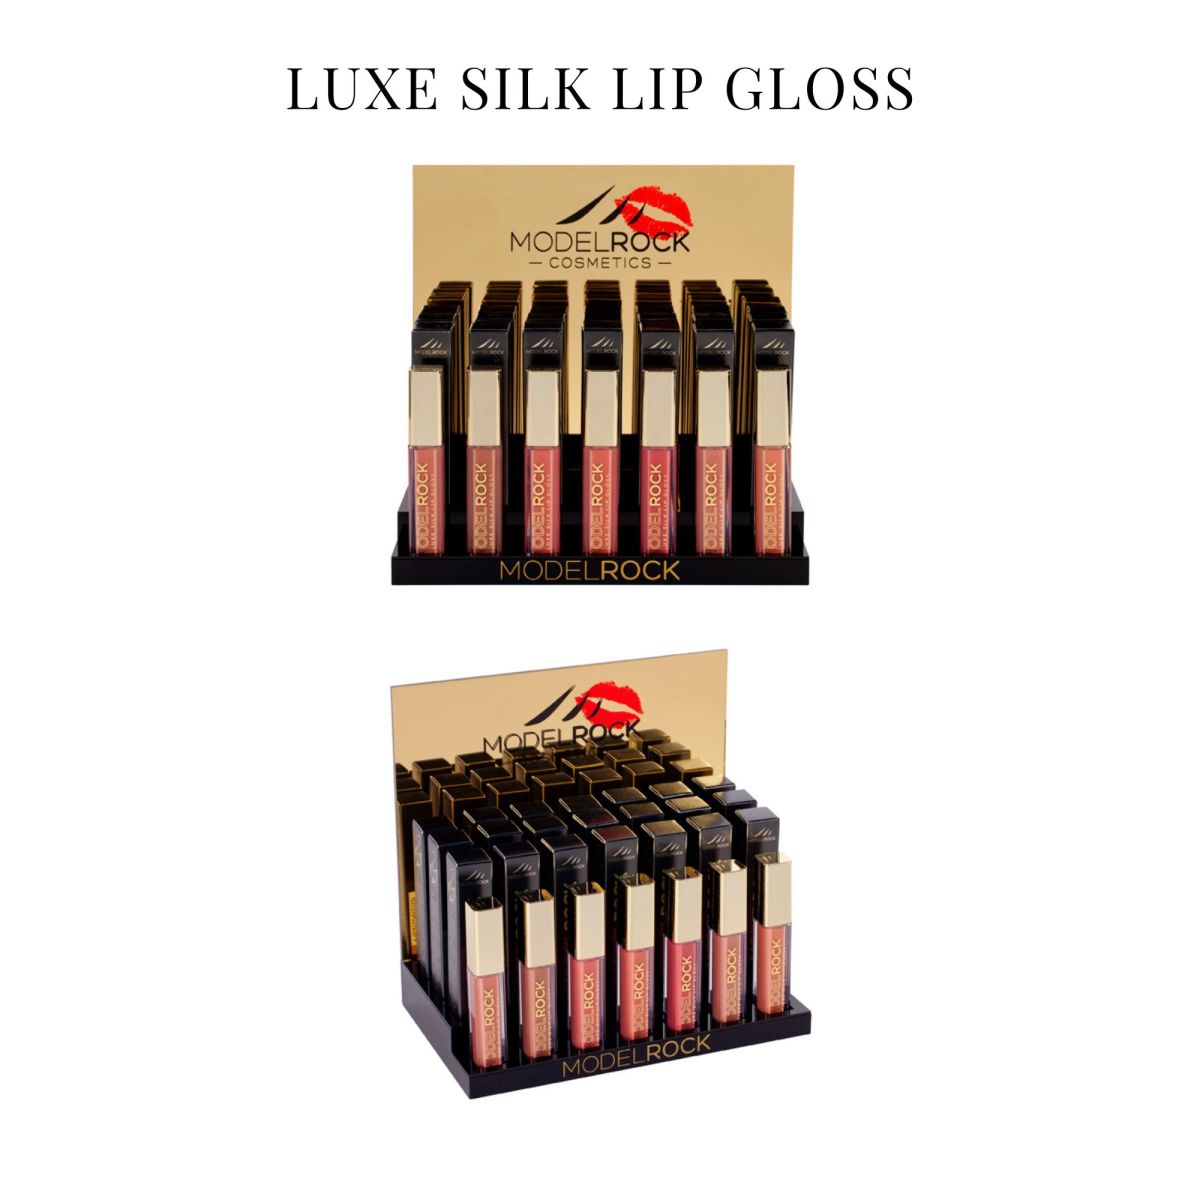 luxe silk lip gloss